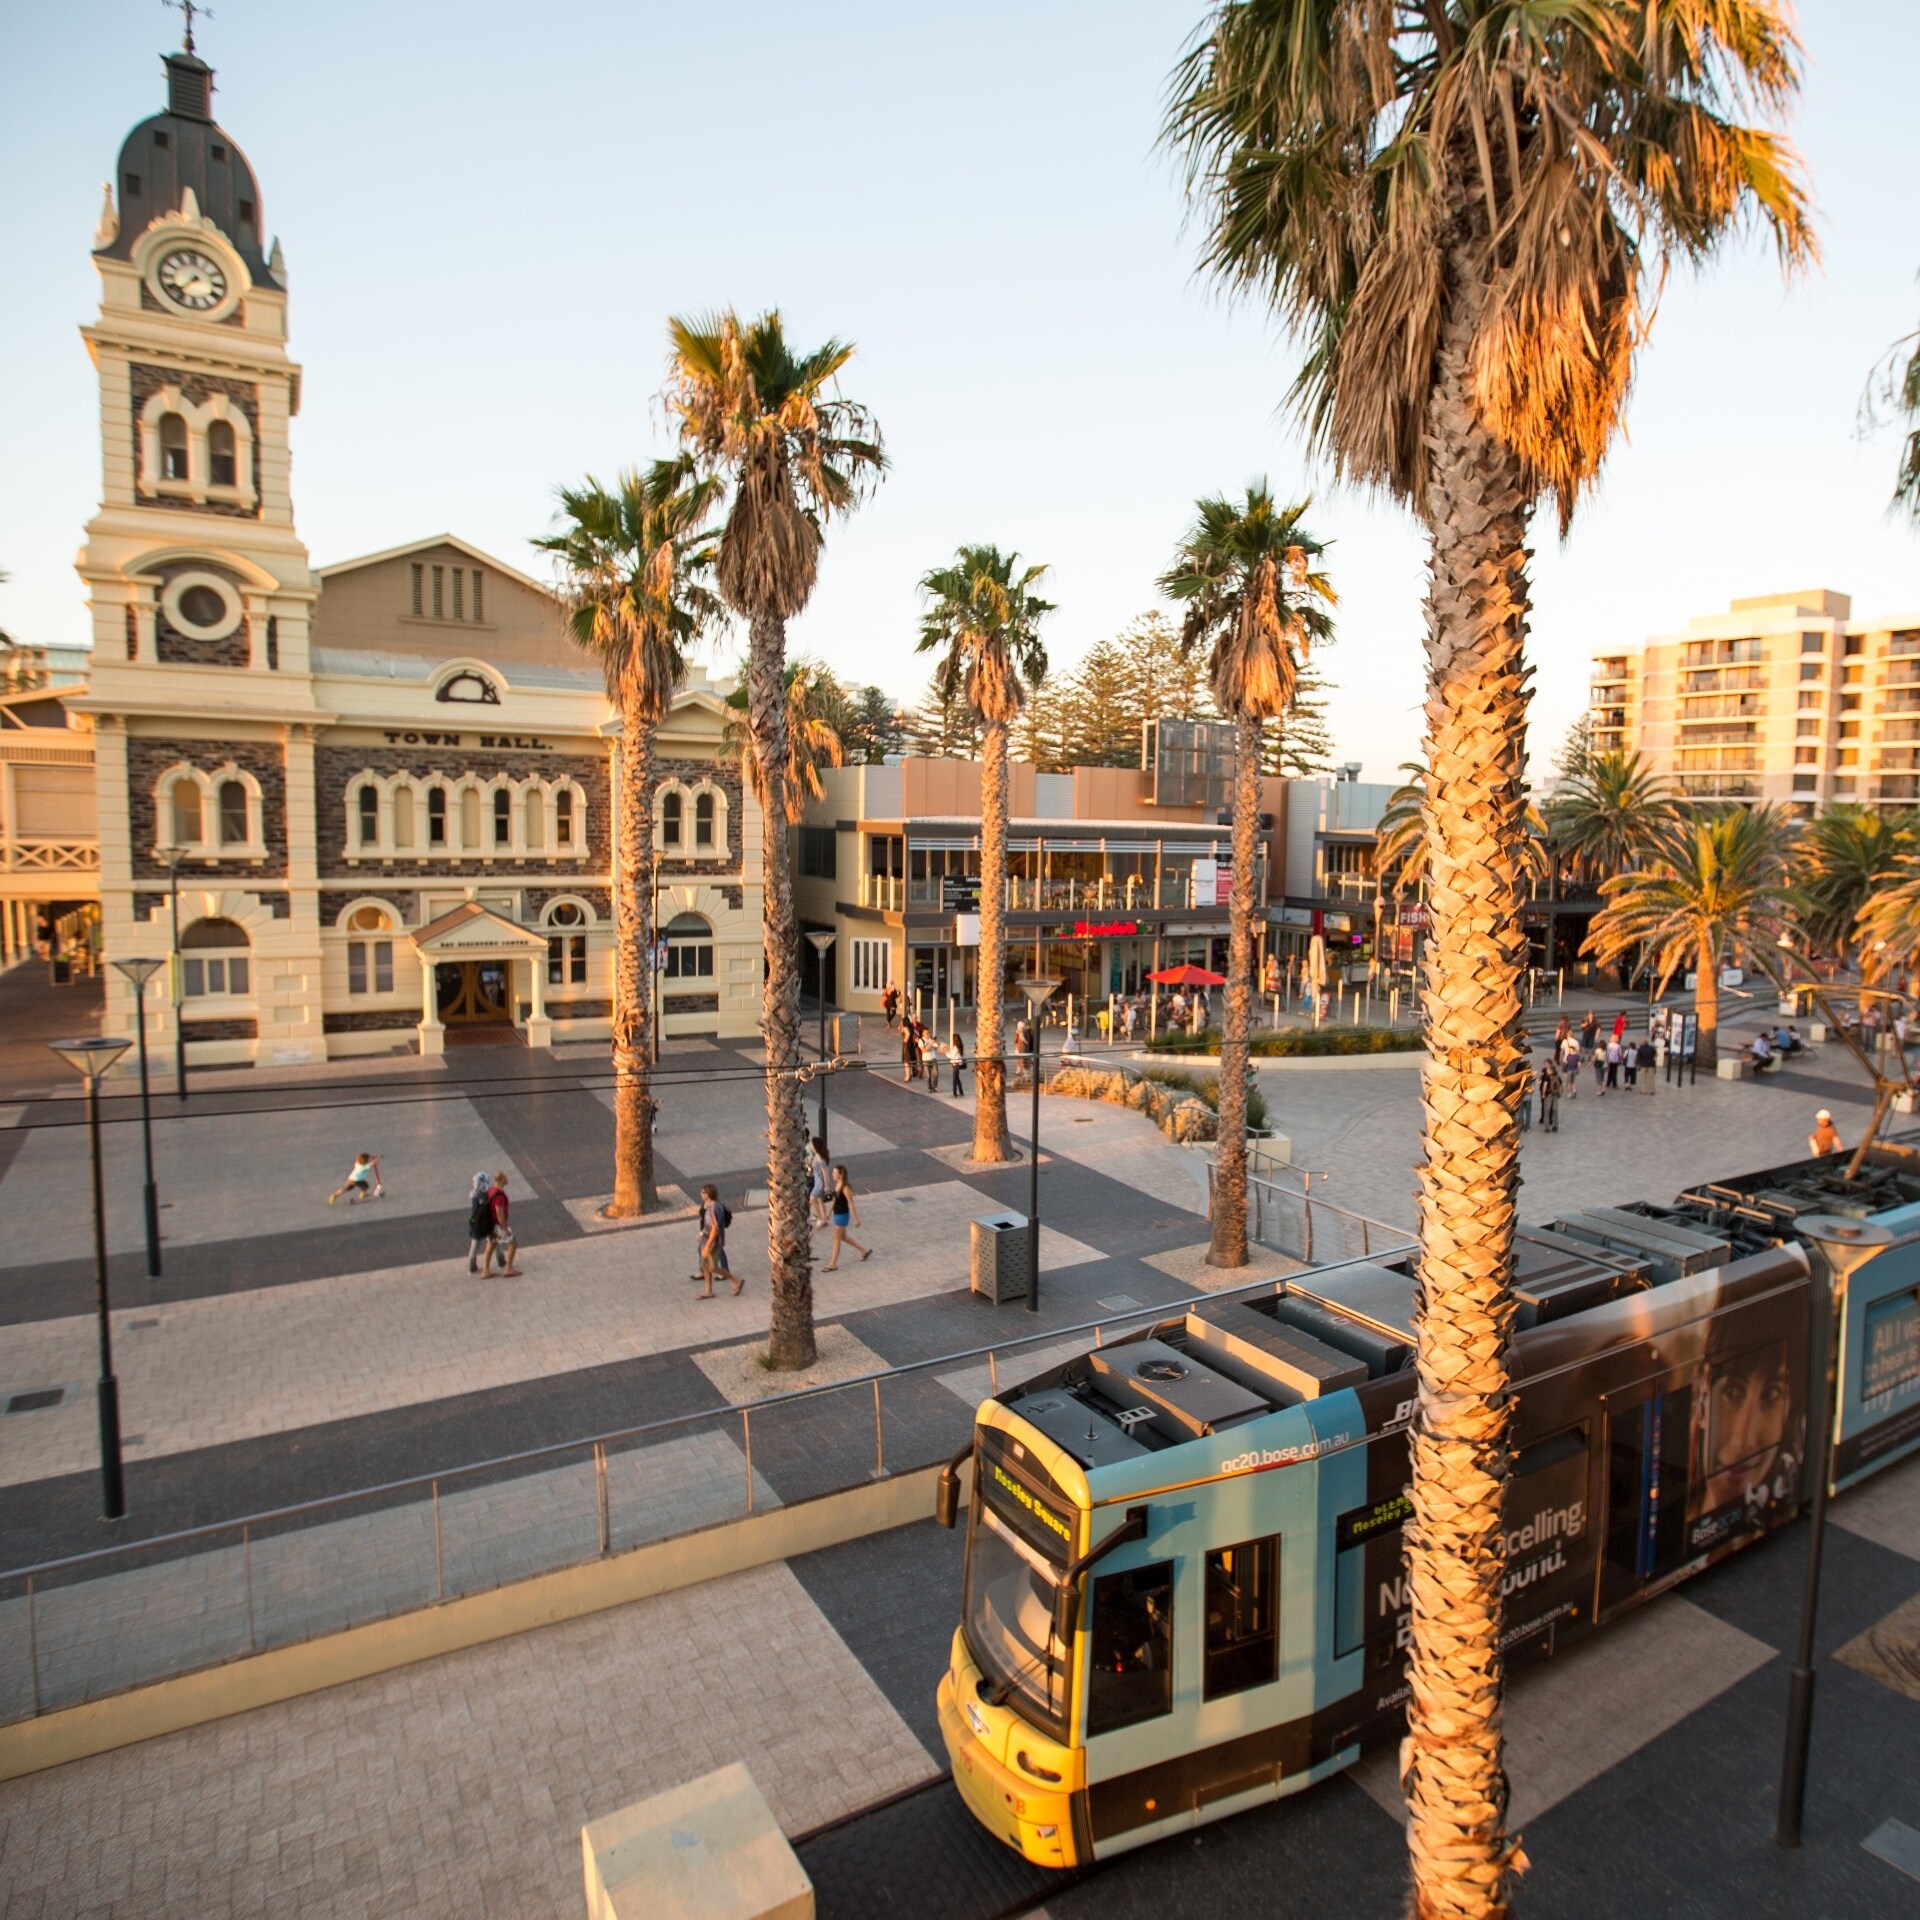 Tram, Moseley Square, Adelaide, SA © Tourism Australia